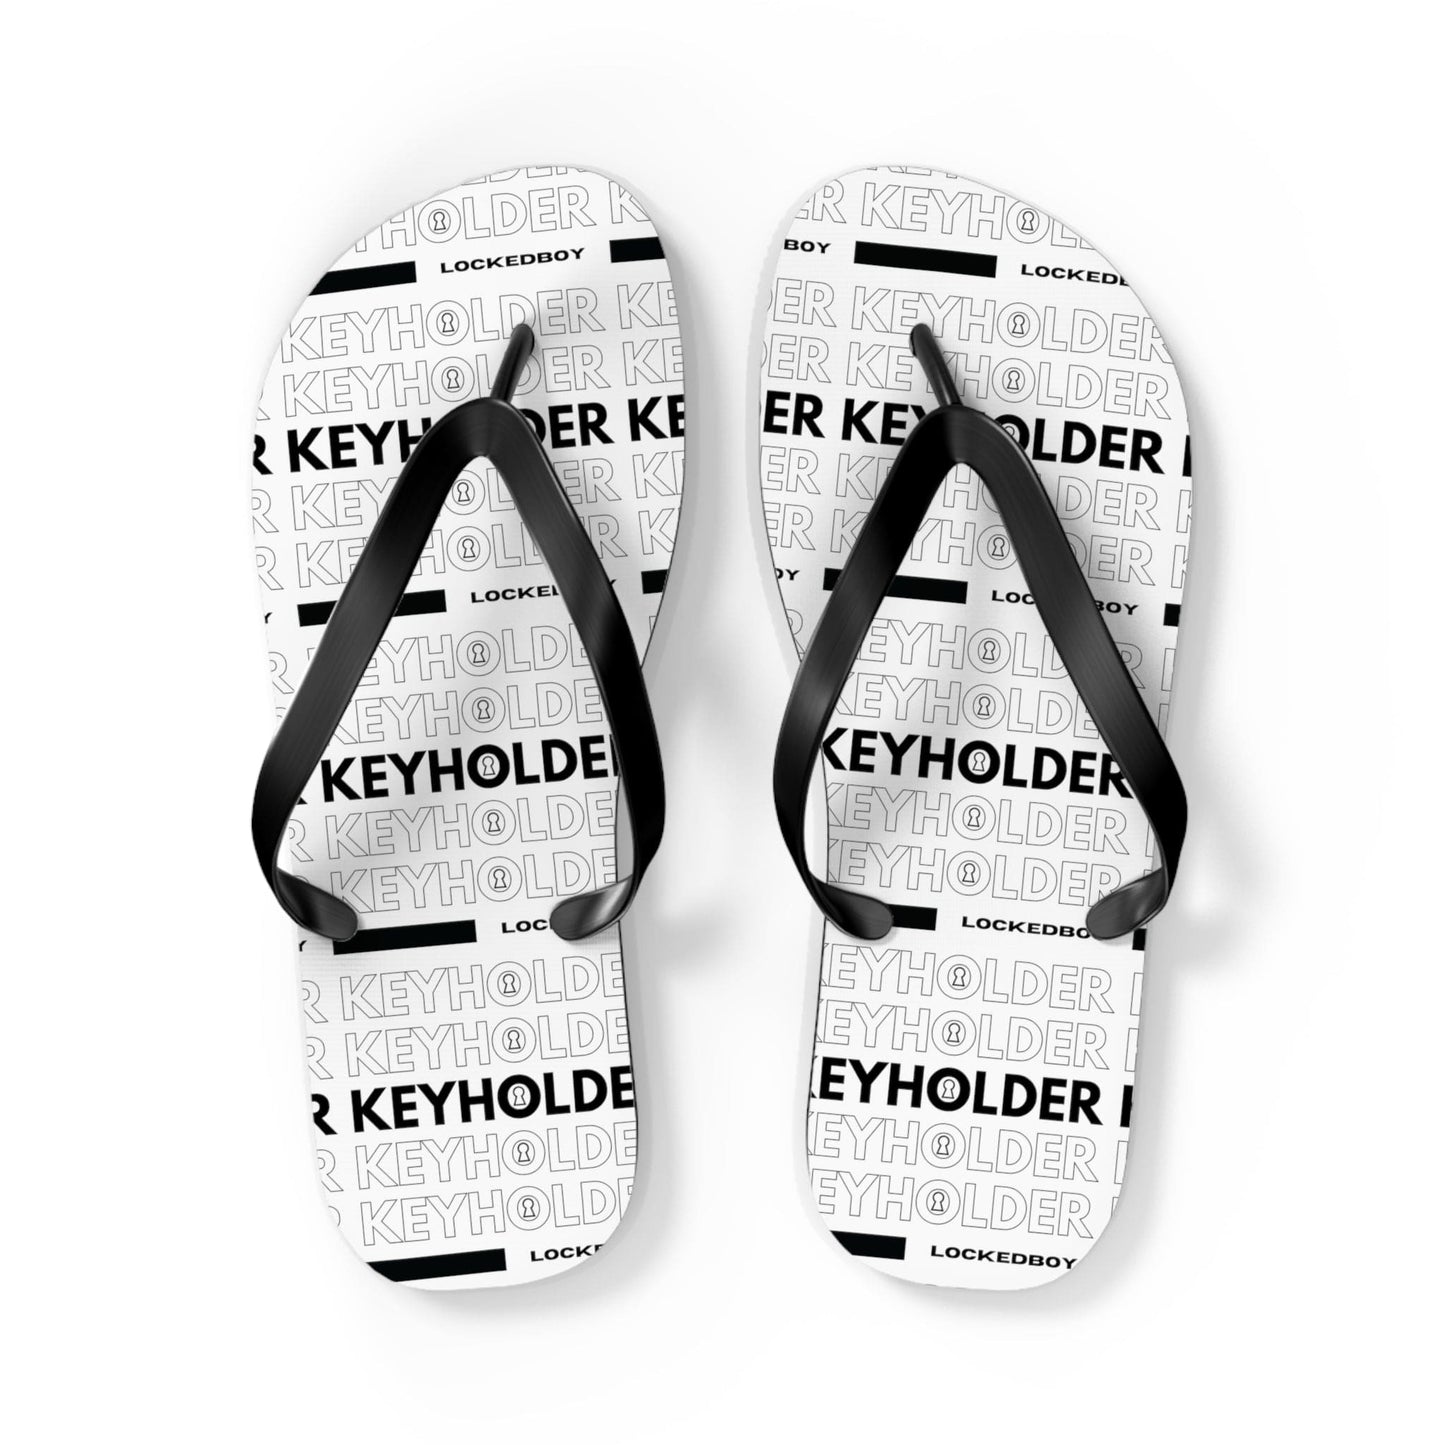 Shoes L / Black sole KeyHolder Bag Inspo Unisex Flip-Flops LEATHERDADDY BATOR